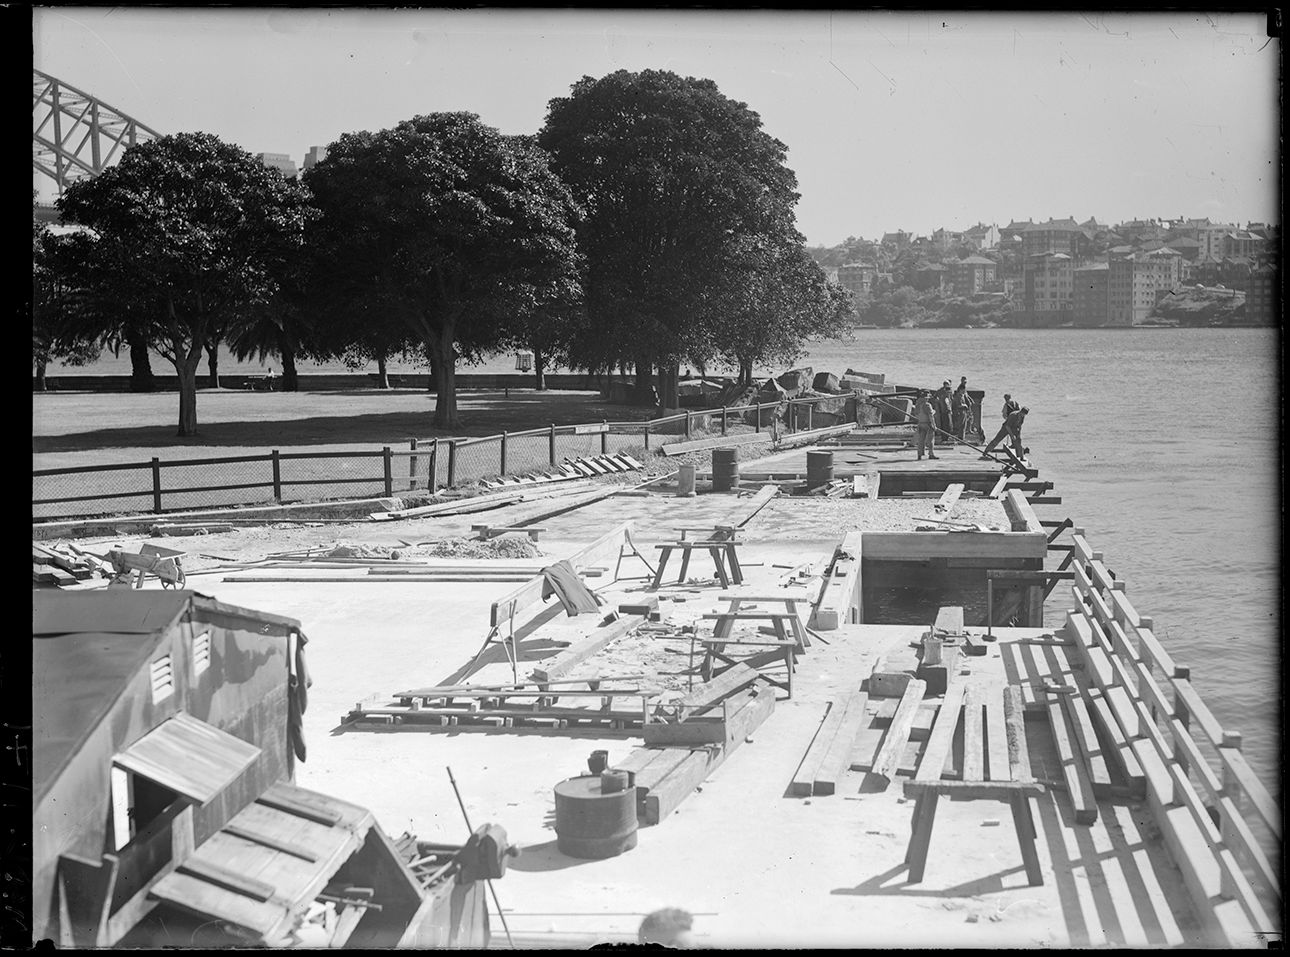 Construction work at Bennelong Point, World War 2 era